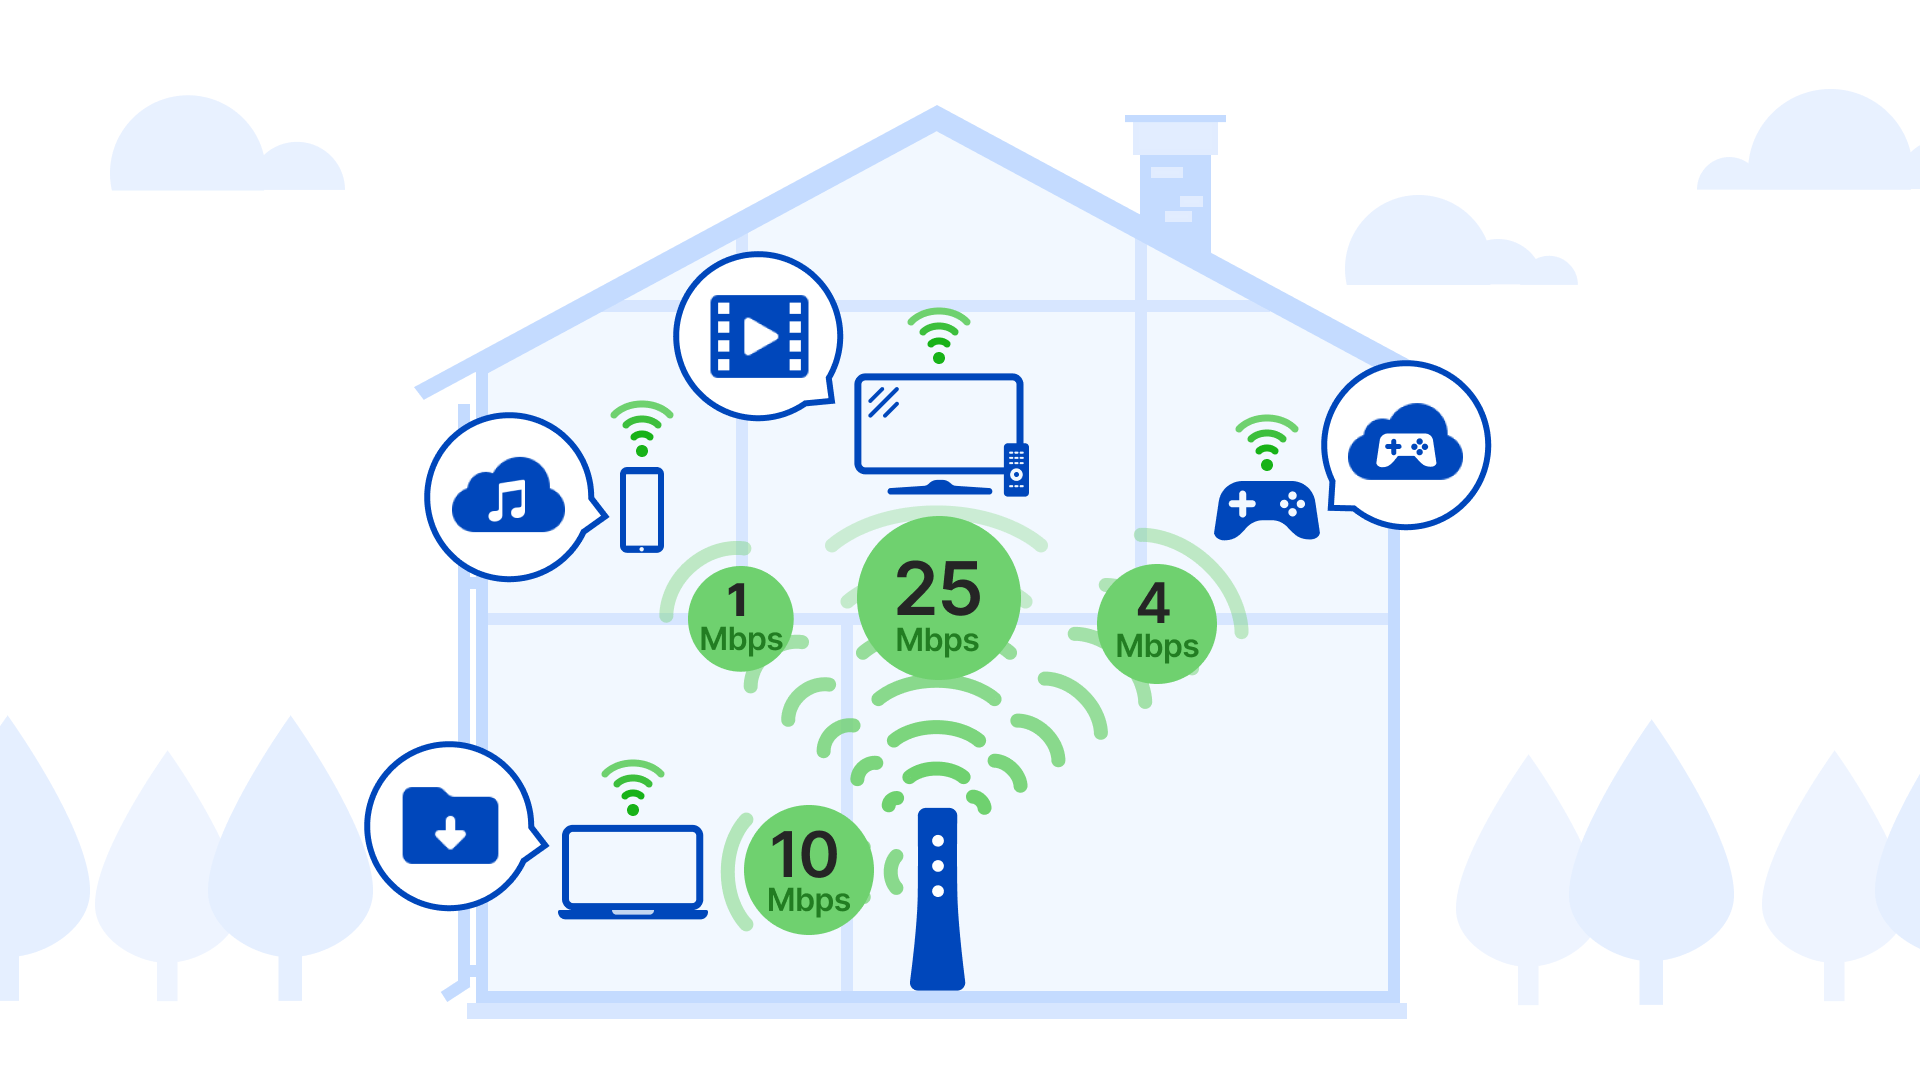 Ilustración que muestra los requisitos de ancho de banda de varios dispositivos